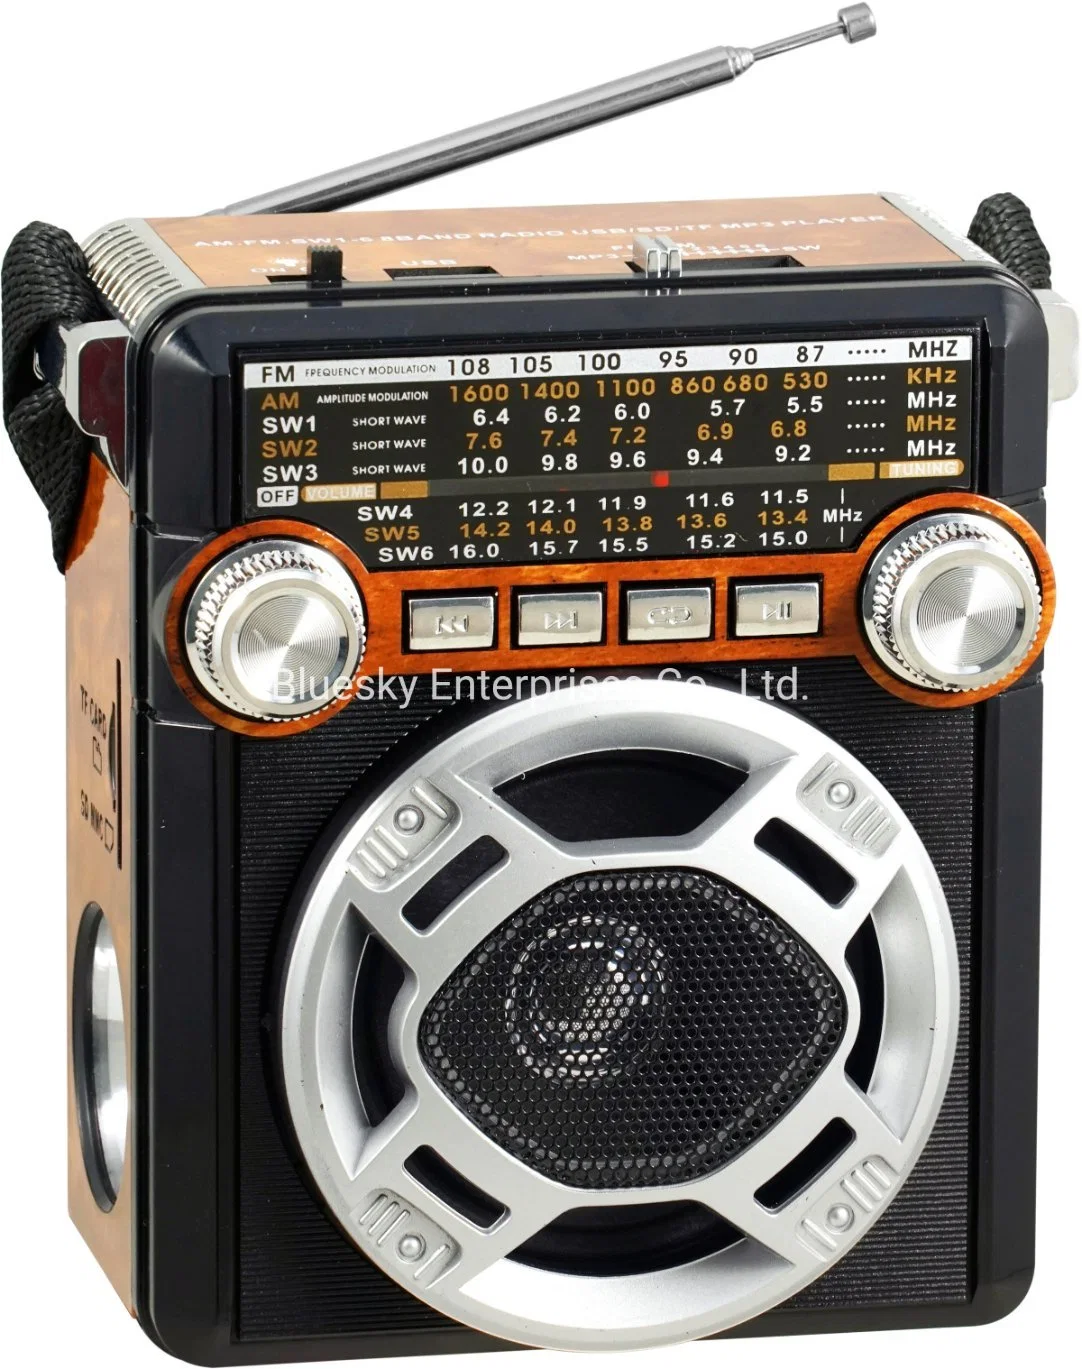 OEM-Tw 300LED аккумулятор Professional Am FM-Sw 3 радио промышленного диапазона портативный радиоприемник с светодиодный индикатор, поддержка USB, TF, карта памяти SD, Aux-in